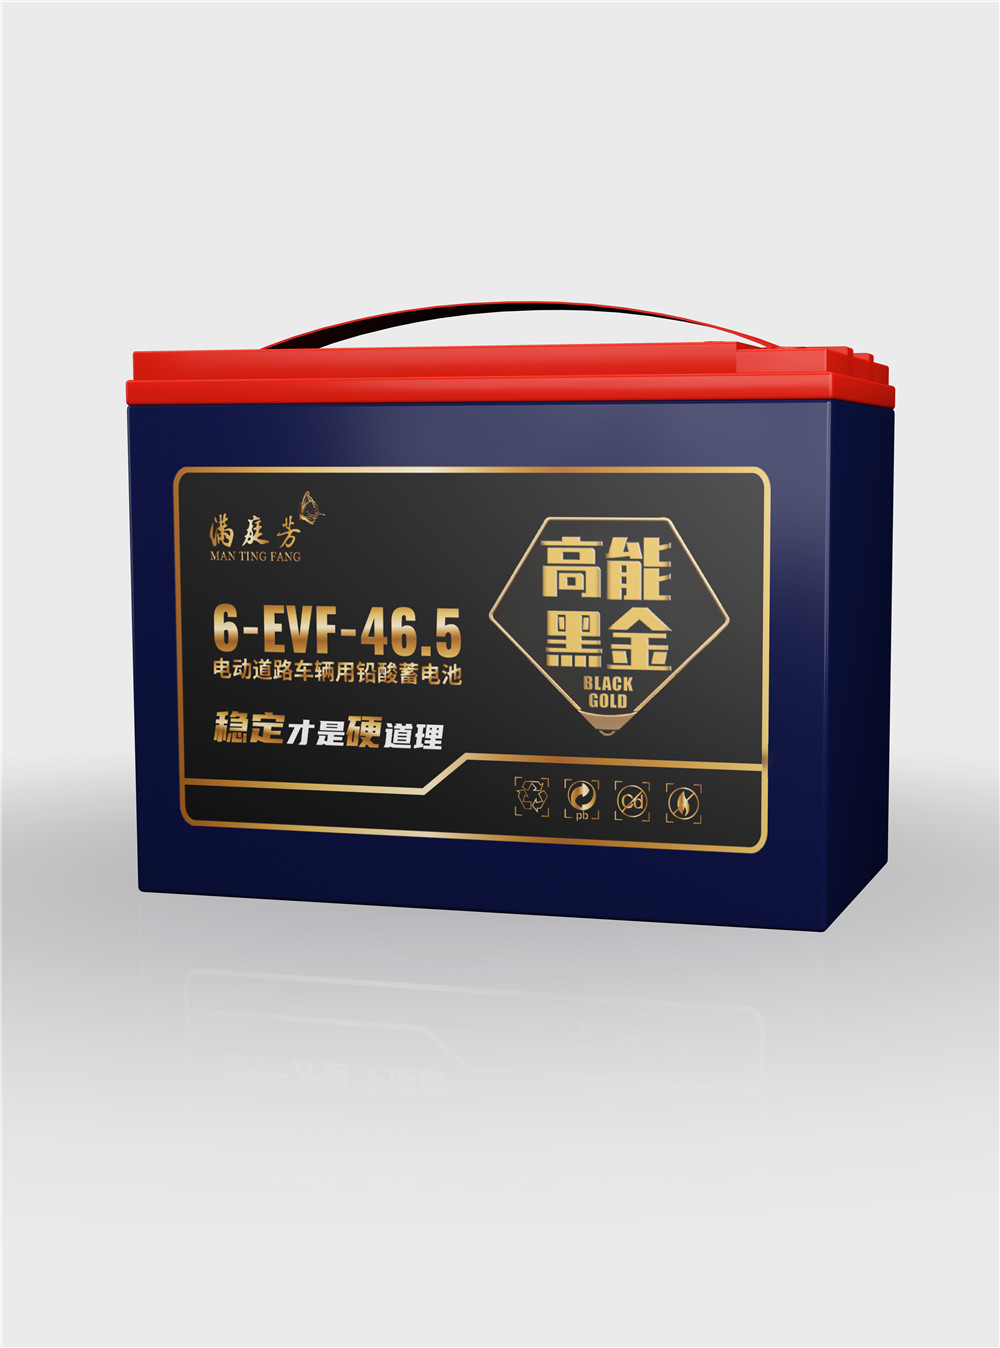 mantingfang black gold series 6-EVF-46.5